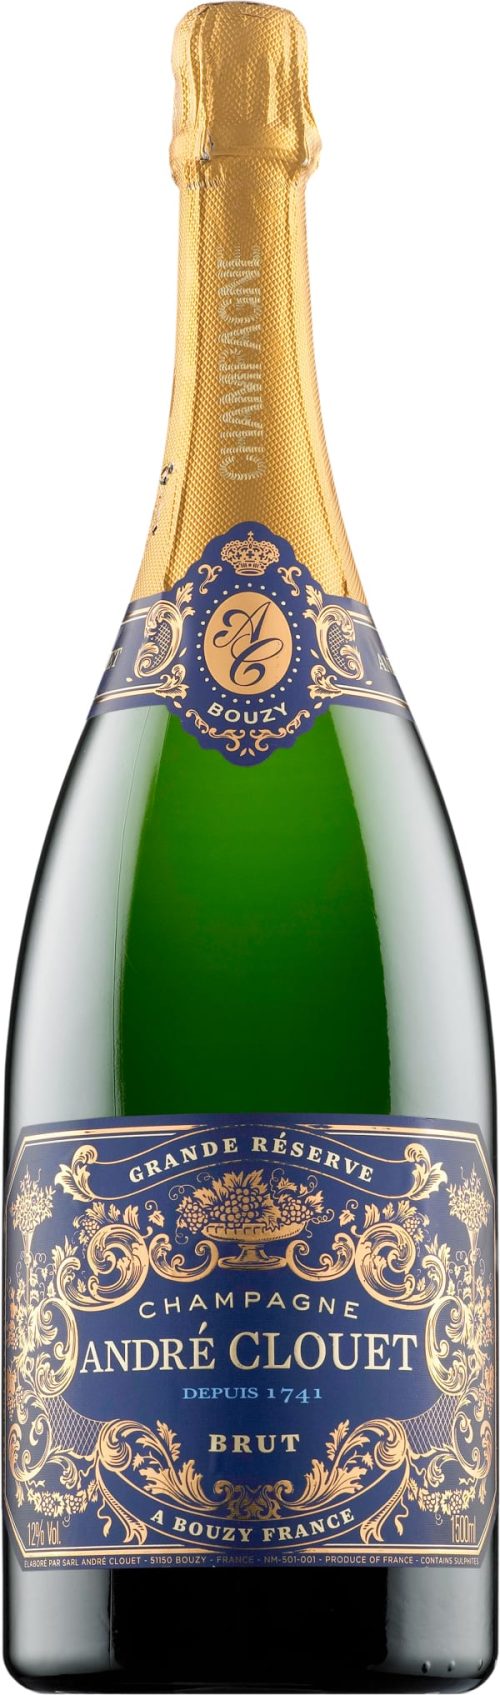 NV-Andre Clouet Champagne Grande Reserve Brut